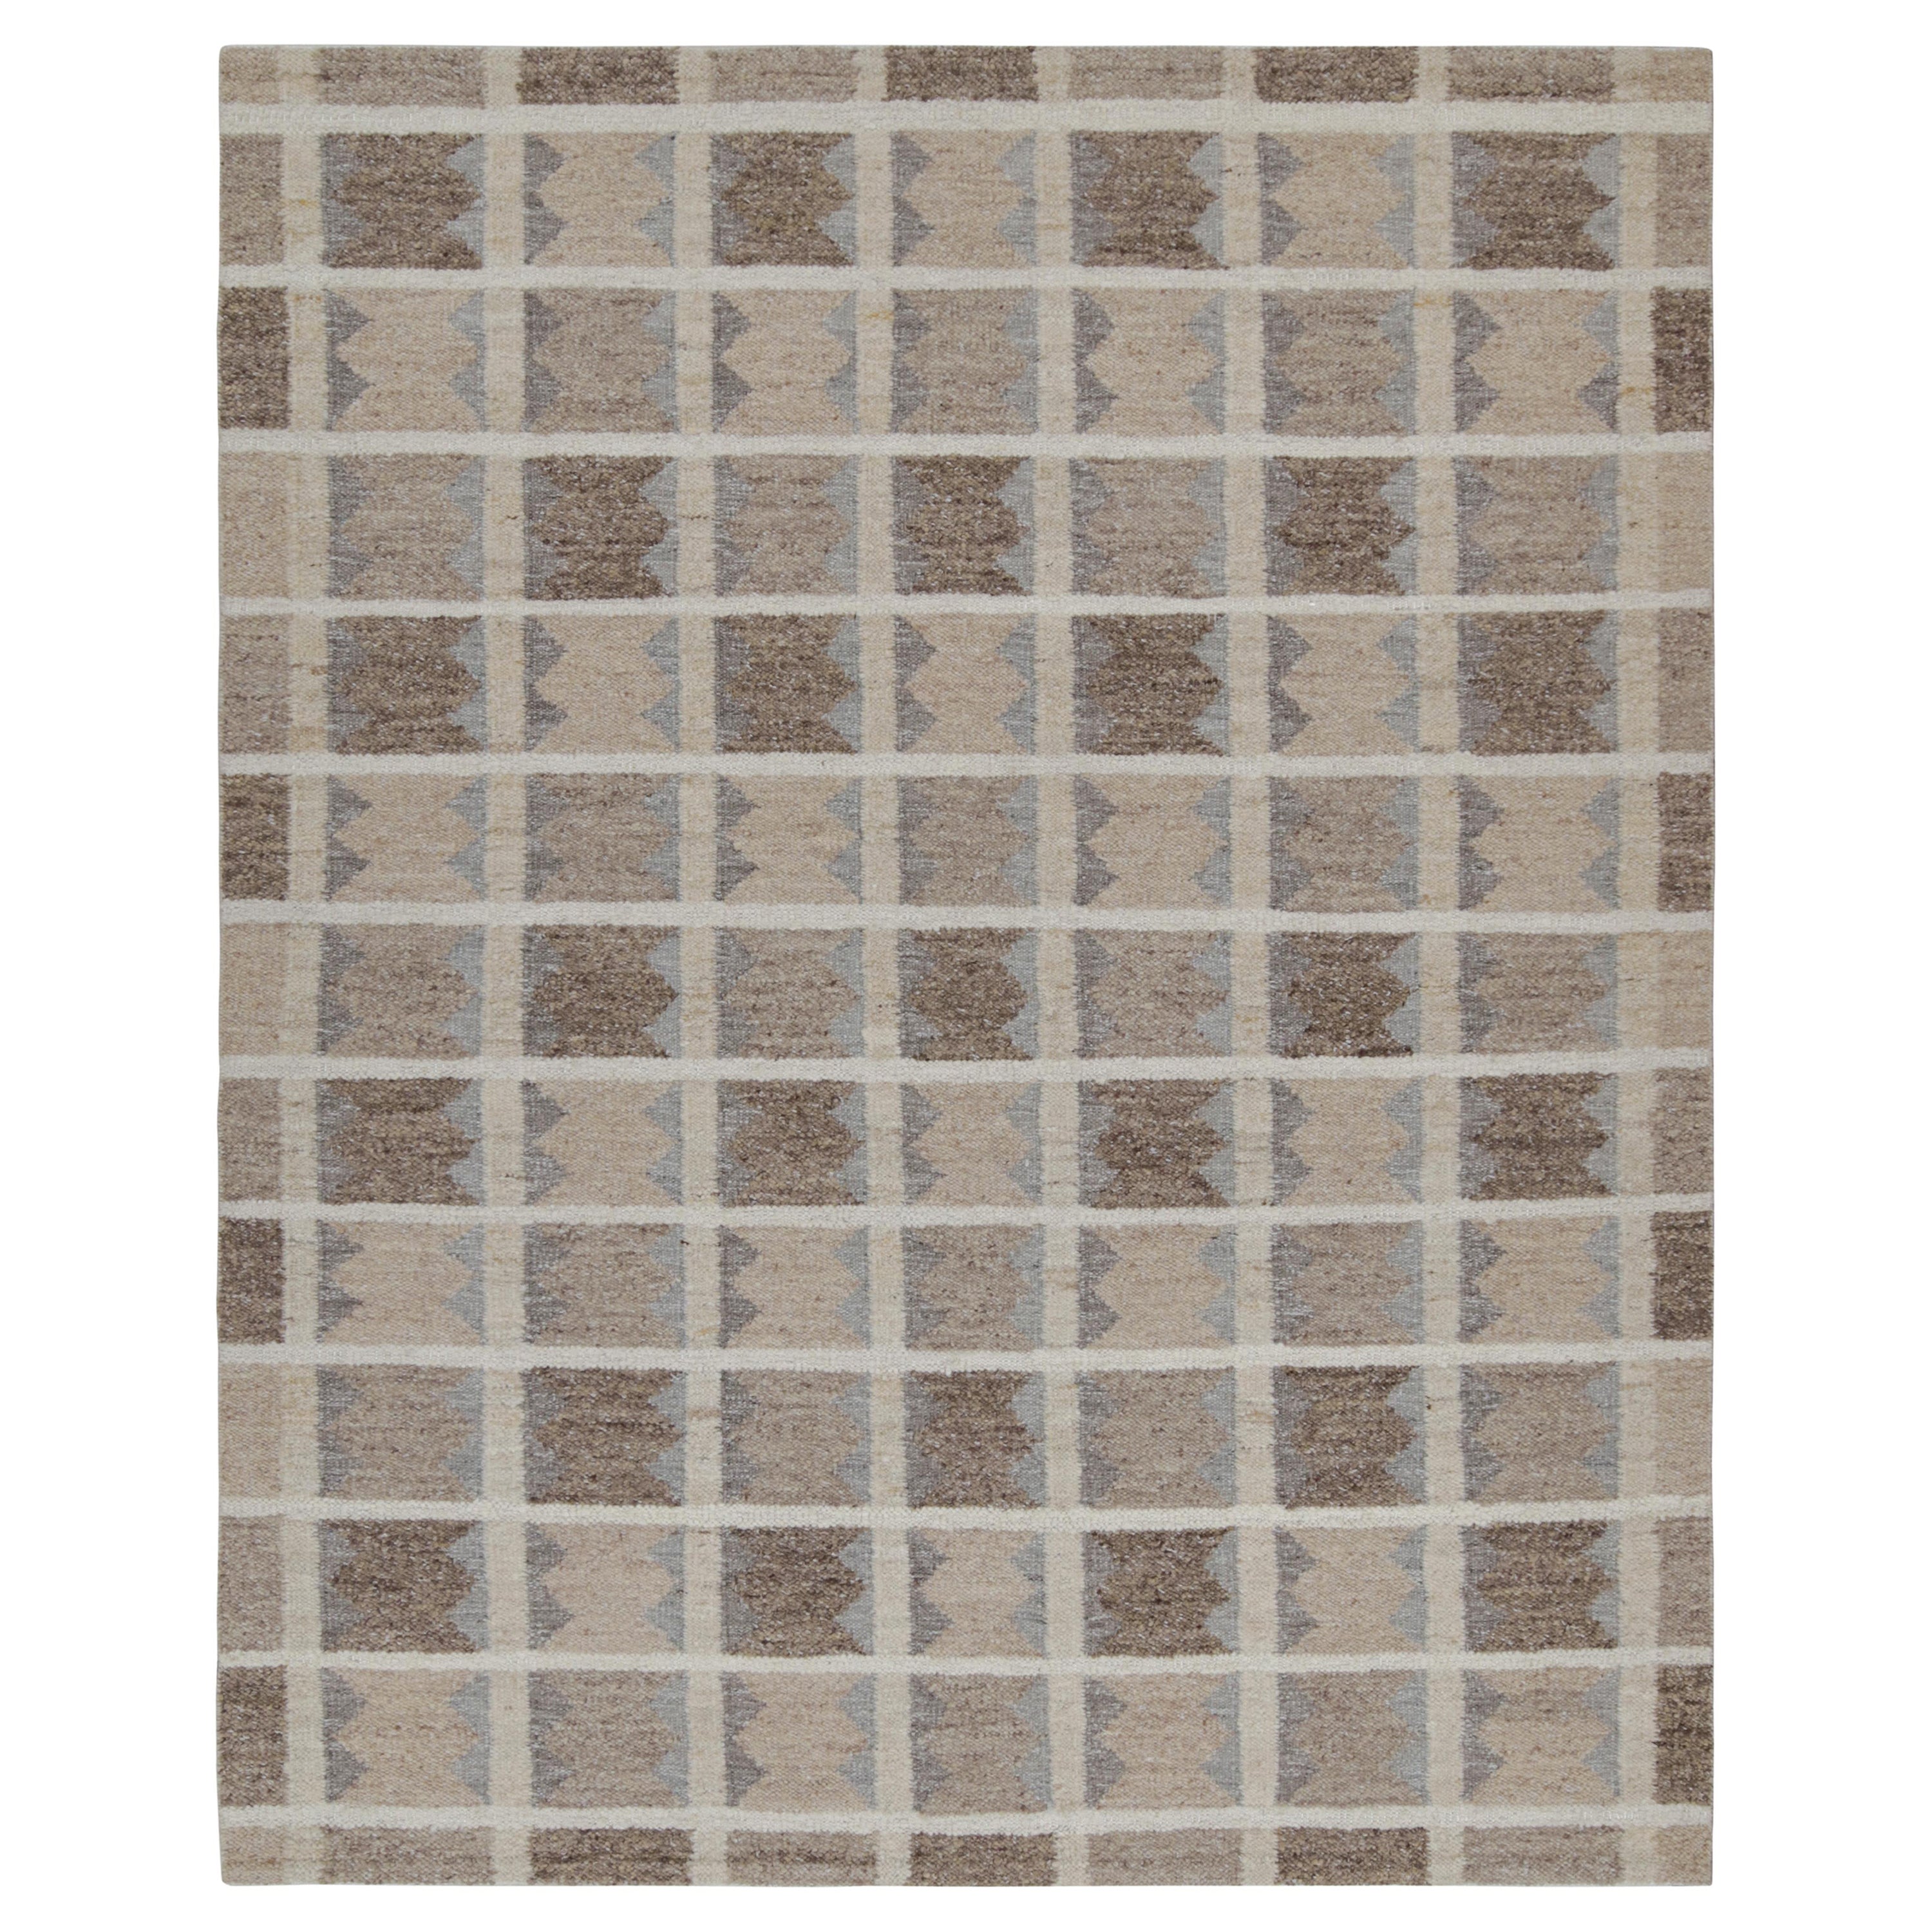 Rug & Kilim's Scandinavian Style Kilim in Beige, Brown & Gray Geometric Patterns (Kilim de style scandinave aux motifs géométriques beige, brun et gris) en vente